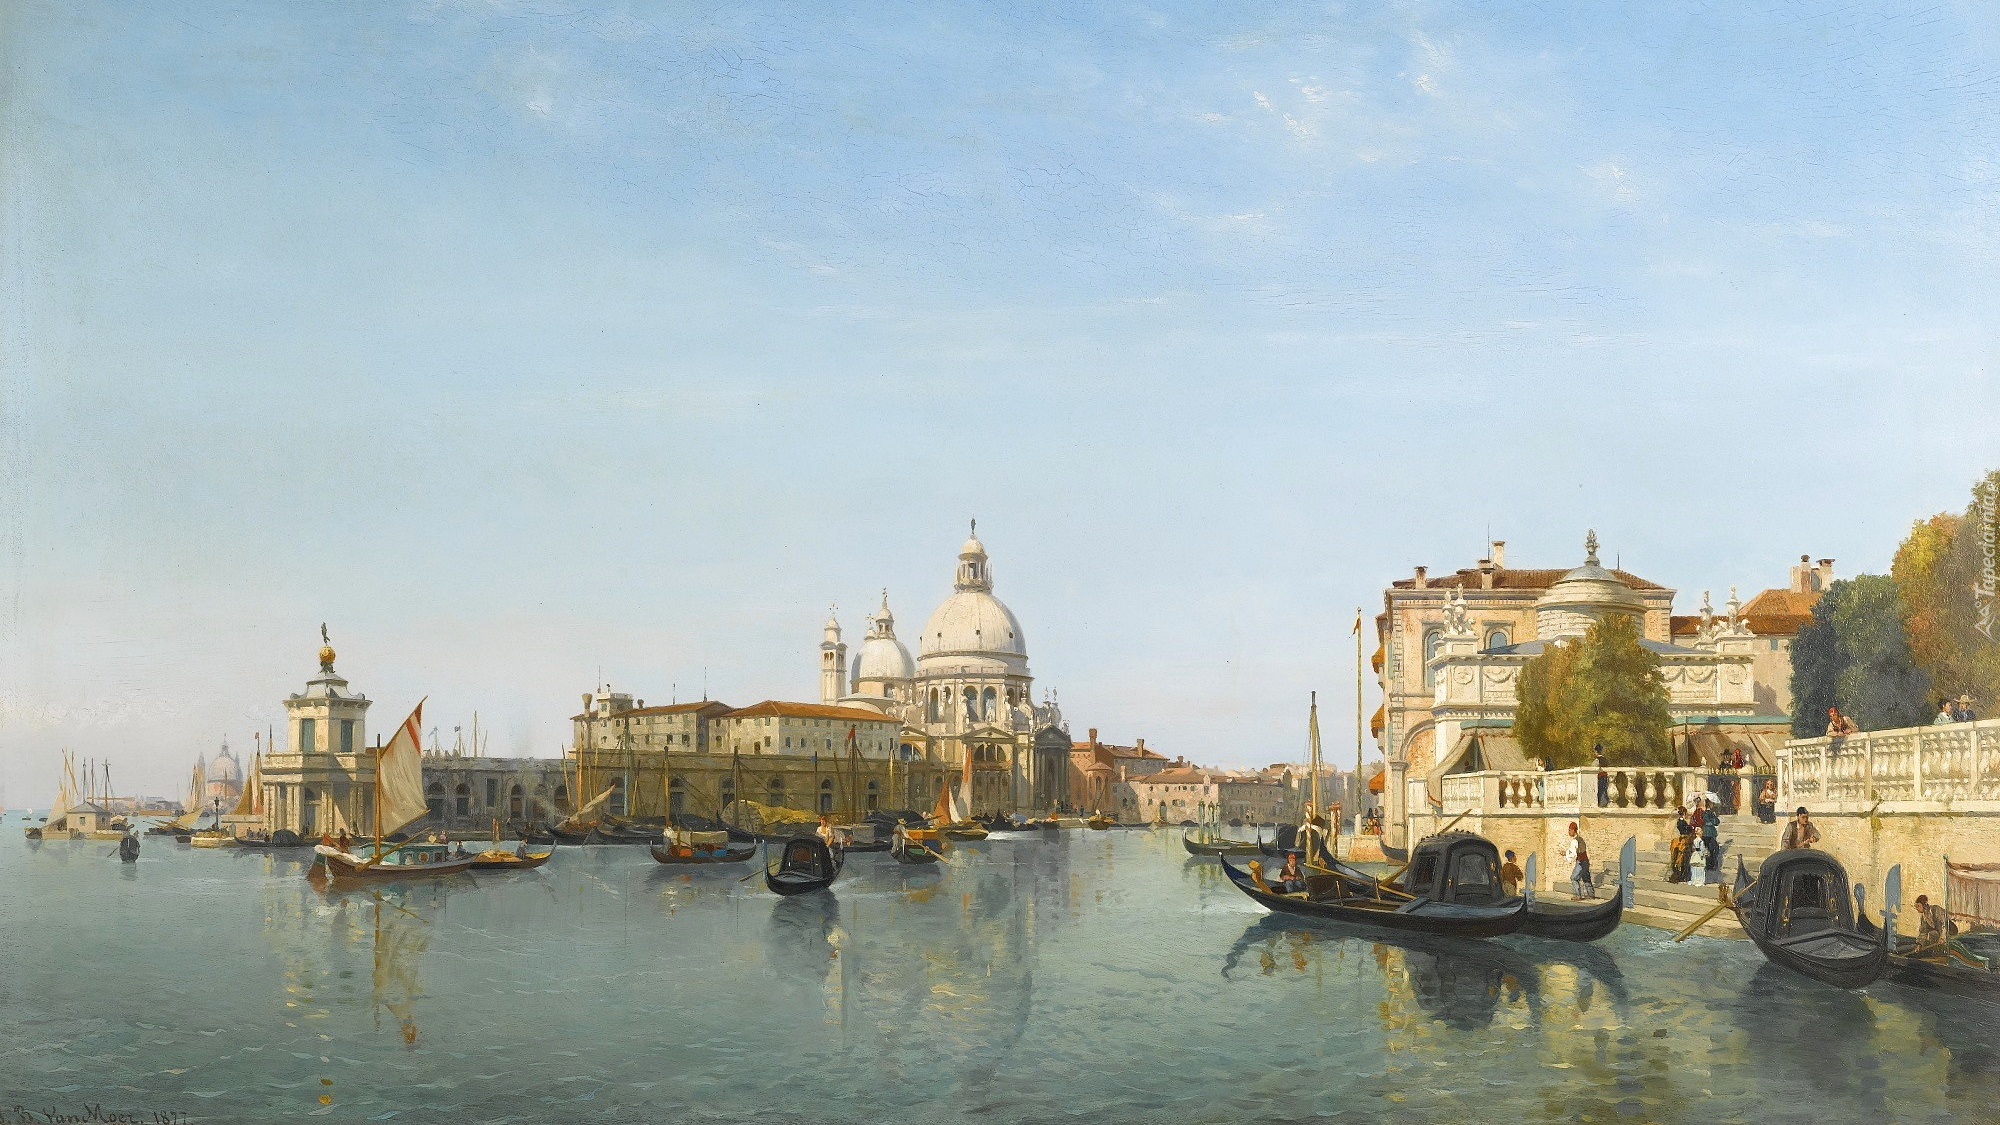 Malarstwo, Obraz, Jean-Baptiste van Moer, Budowle, Kanał, Gondole, Wenecja, Włochy